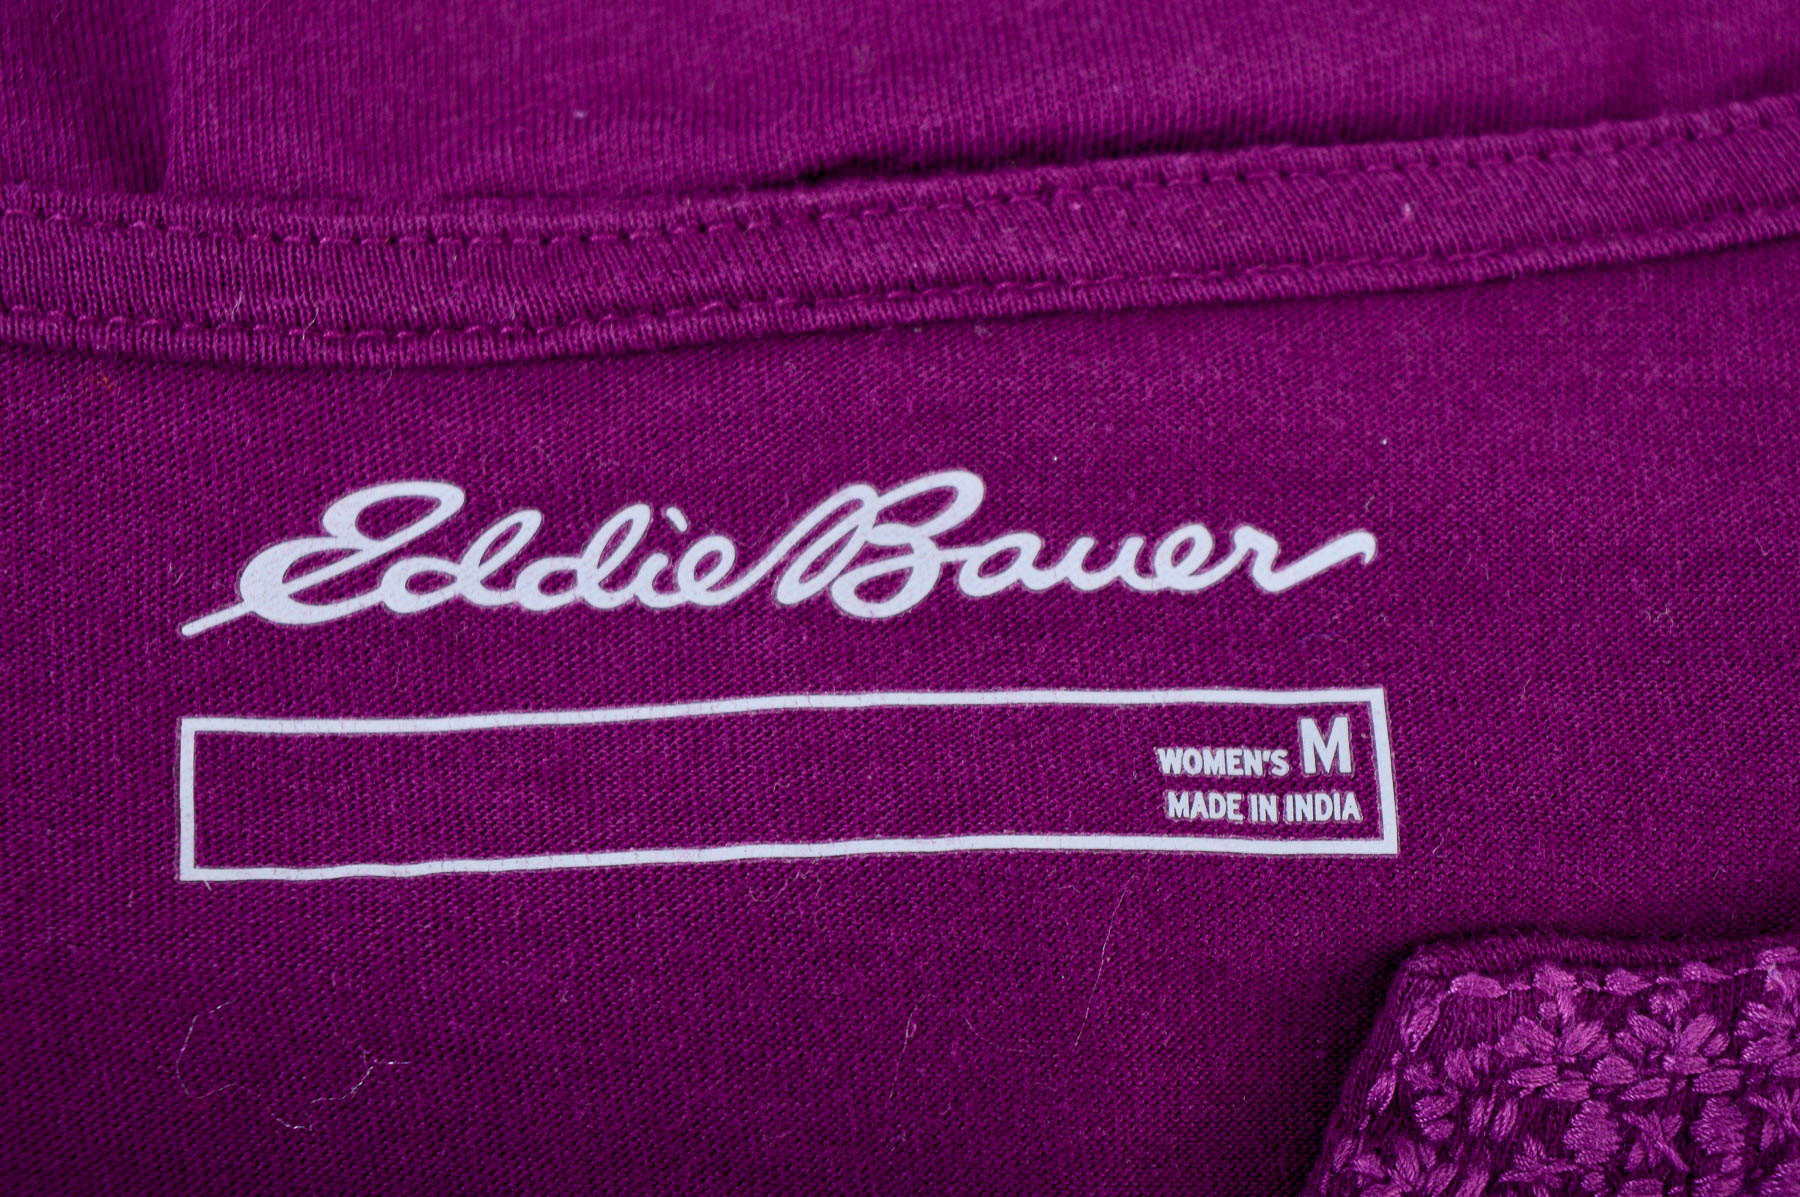 Γυναικεία μπλούζα - Eddie Bauer - 2